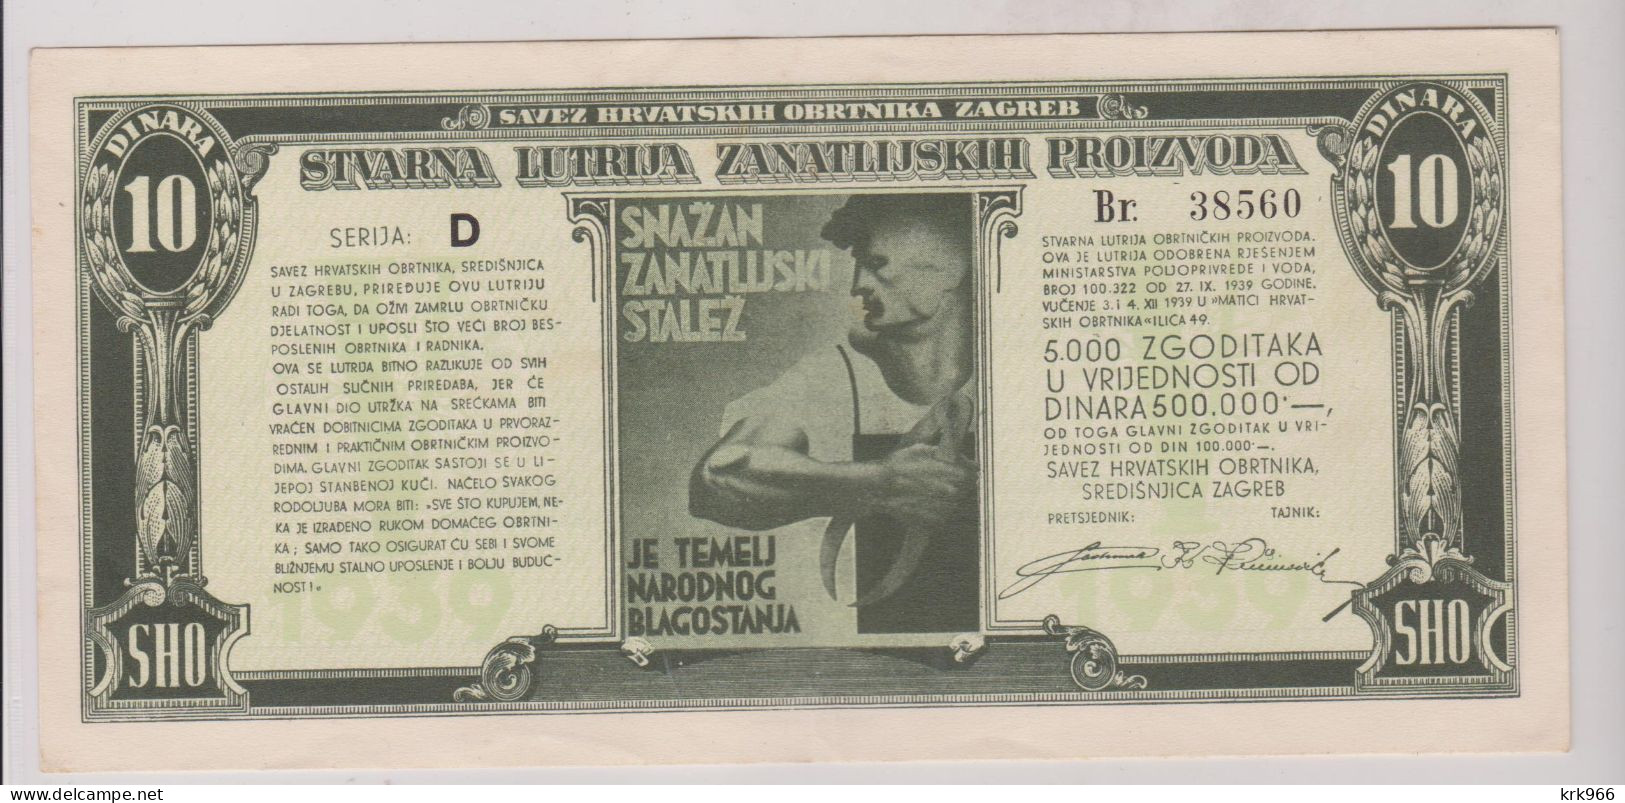 YUGOSLAVIA,1939 LOTTERY Ticket - Lottery Tickets